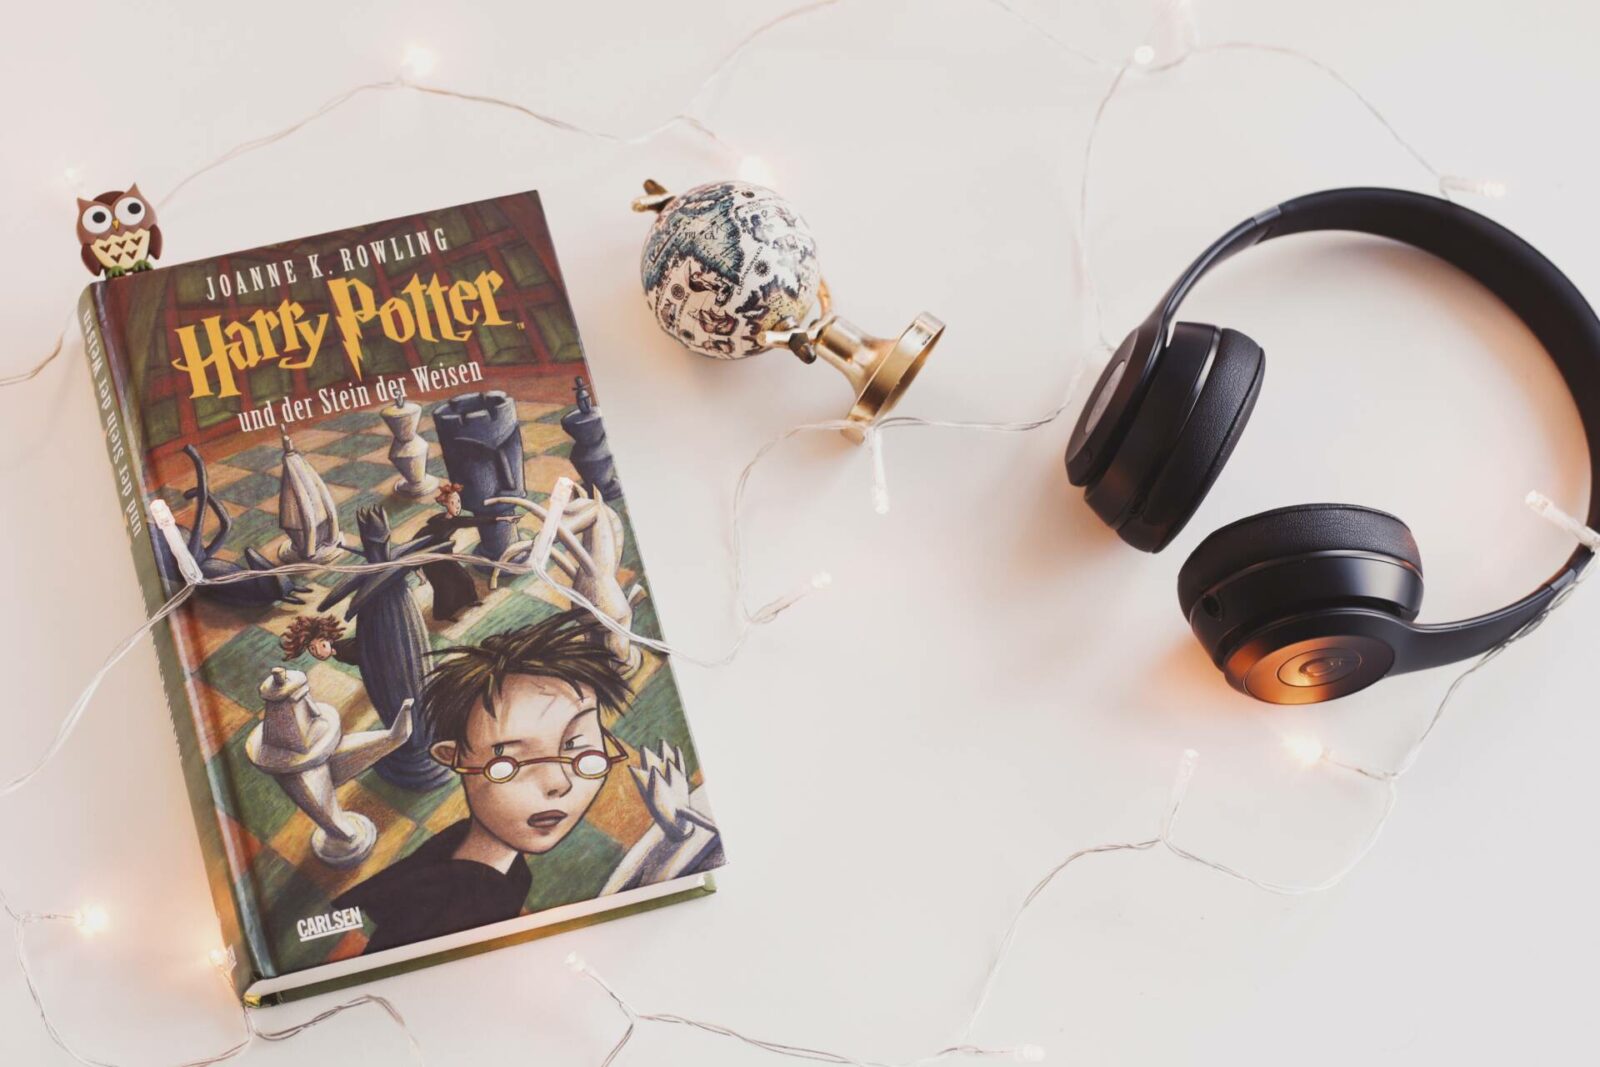 Bà đỡ và Cuộc sống – Cách lập kế hoạch cho chuyến đi trong ngày của Harry Potter ở London